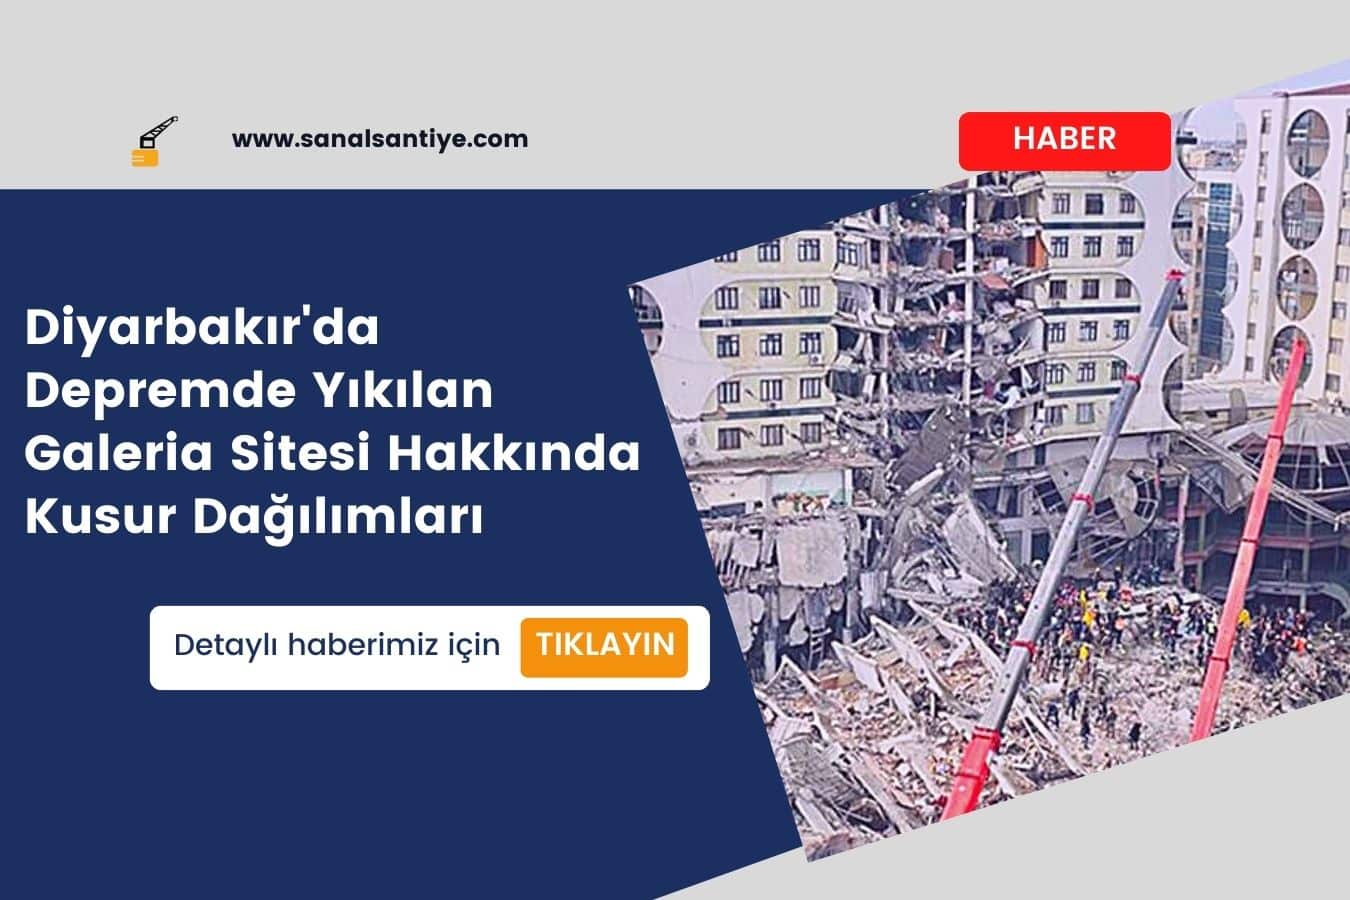 Diyarbakır'da Depremde Yıkılan Galeria Sitesi Hakkında Kusur Dağılımları